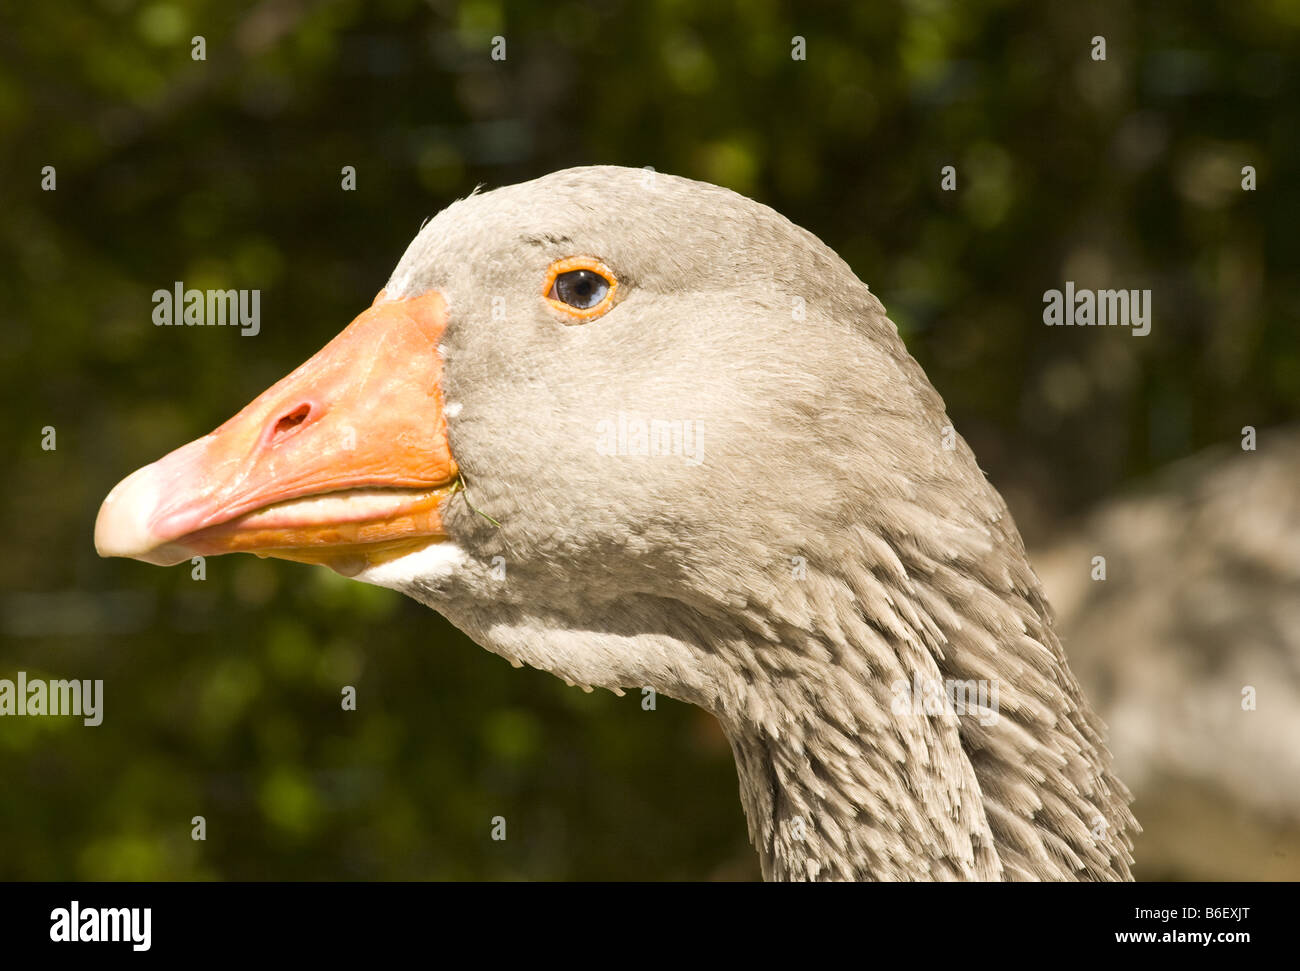 dragor goose geese. anser anser Stock Photo